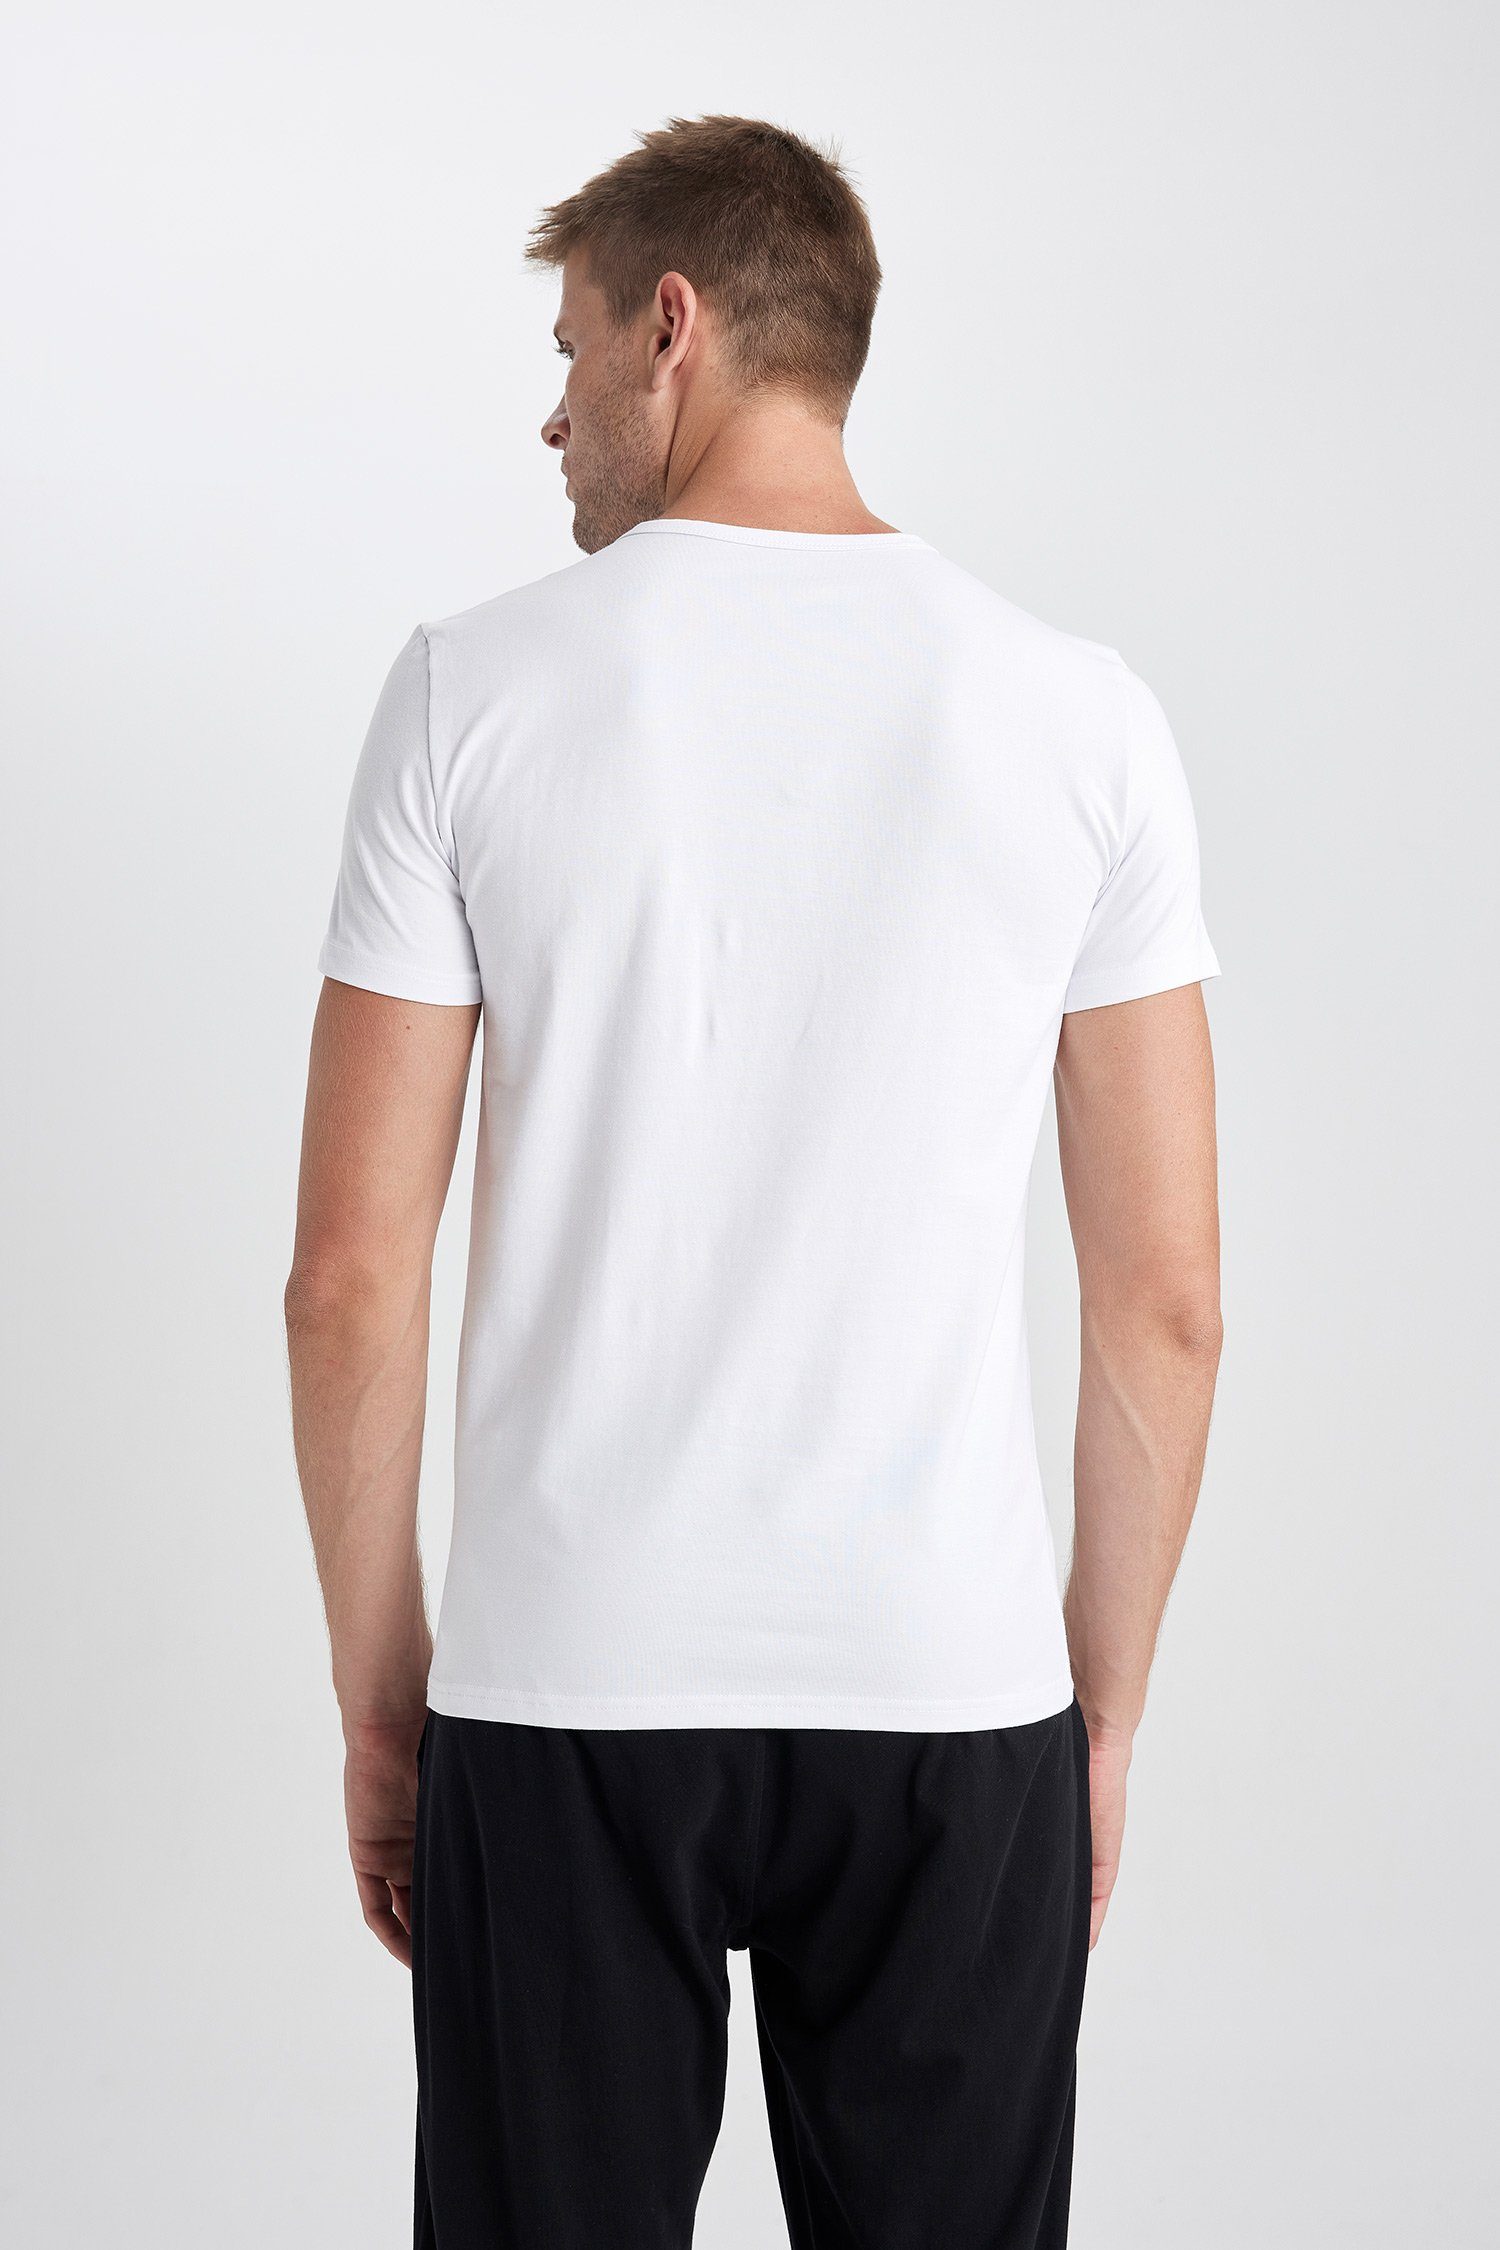 DeFacto T-Shirt Herren T-Shirt REGULAR Weiß FIT